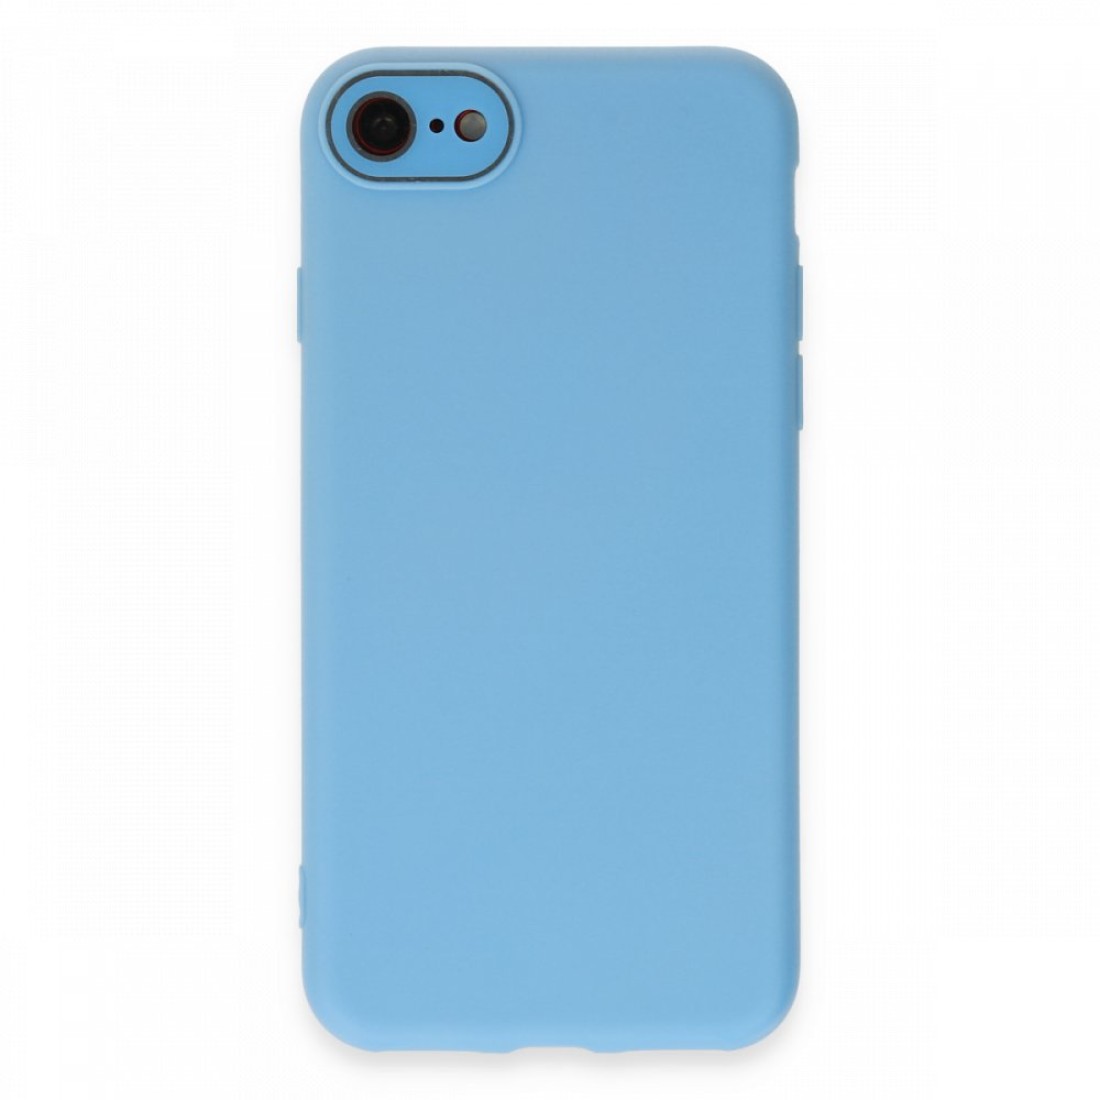 Apple iPhone 7 Kılıf Lansman Glass Kapak - Mavi